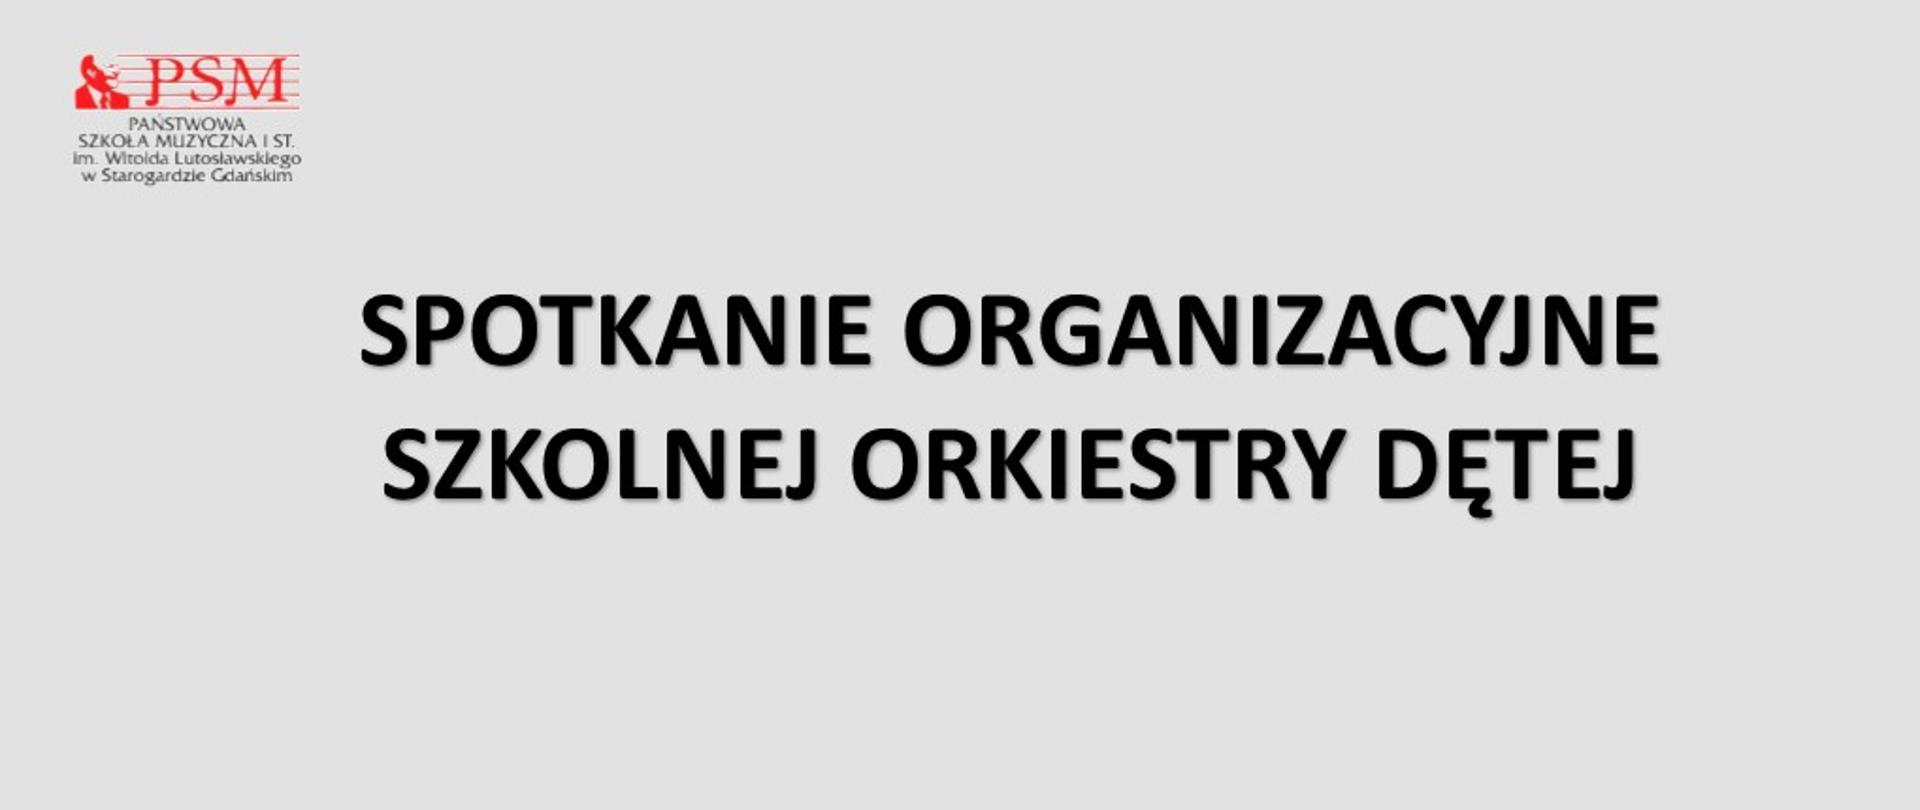 Szara grafika z napisem "spotkanie organizacyjne szkolnej orkiestry dętej" z widocznym czerwonoczarnym szkolnym logo szkoły.